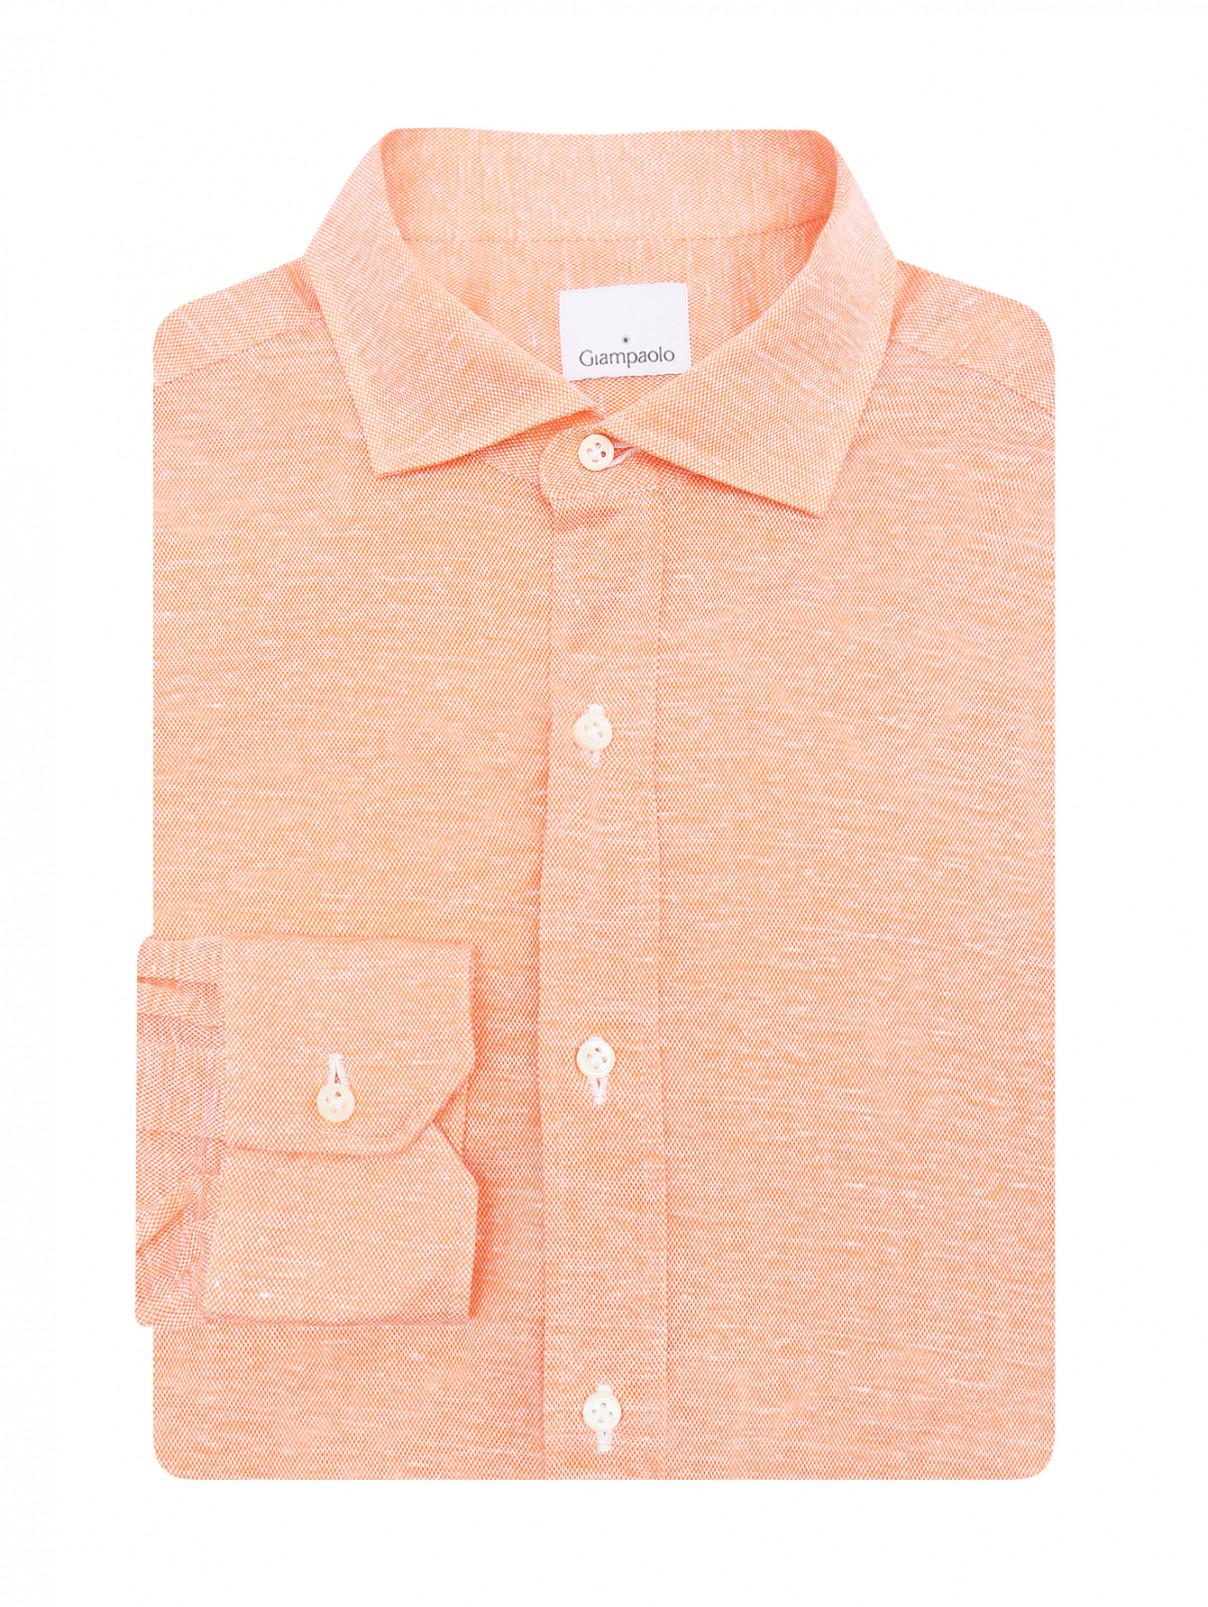 Рубашка из хлопка с узором Giampaolo  –  Общий вид  – Цвет:  Оранжевый